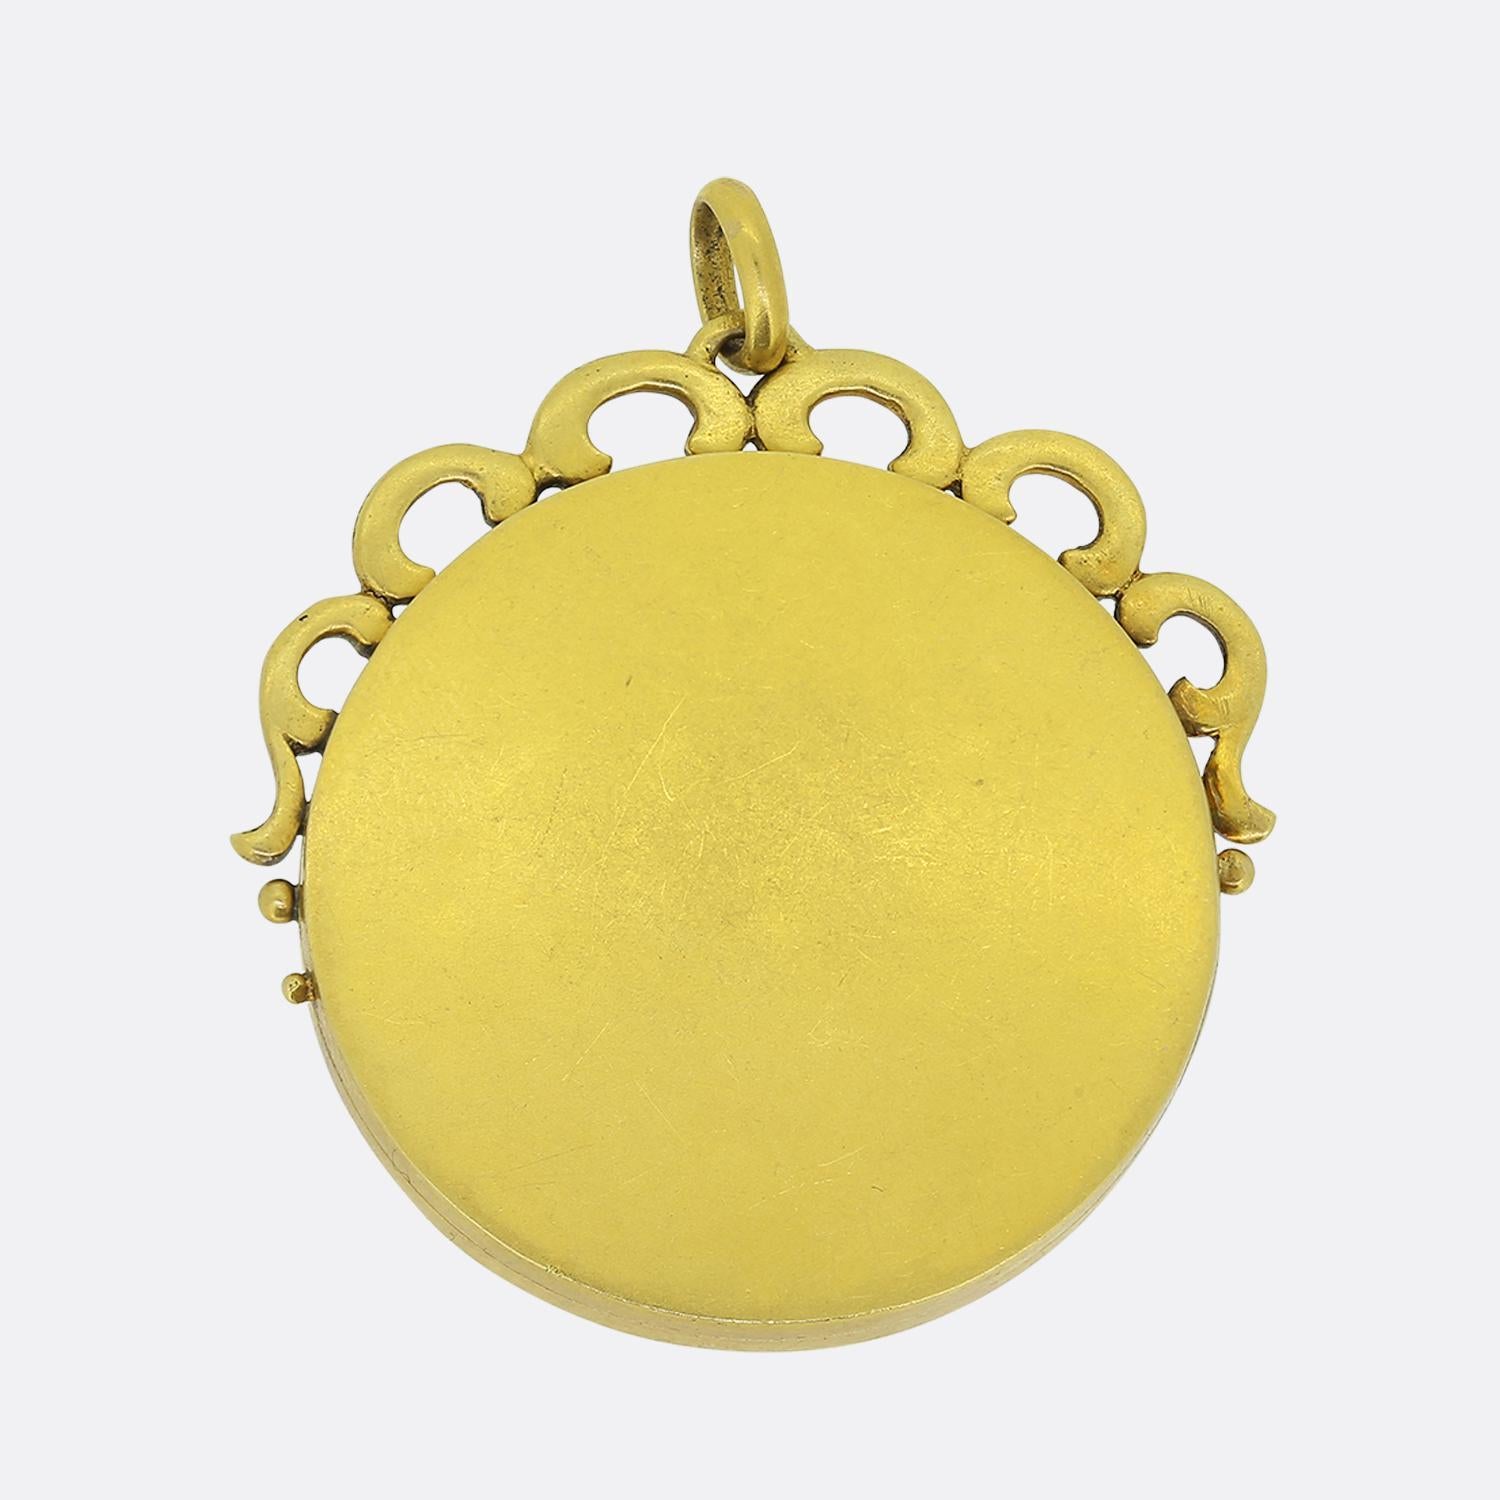 Aquí tenemos un fabuloso medallón engastado que data de la época victoriana. Esta pieza circular ha sido elaborada en un rico oro amarillo de 18 ct y luce en el centro una herradura engastada con diamantes talla rosa, acompañada de una fusta